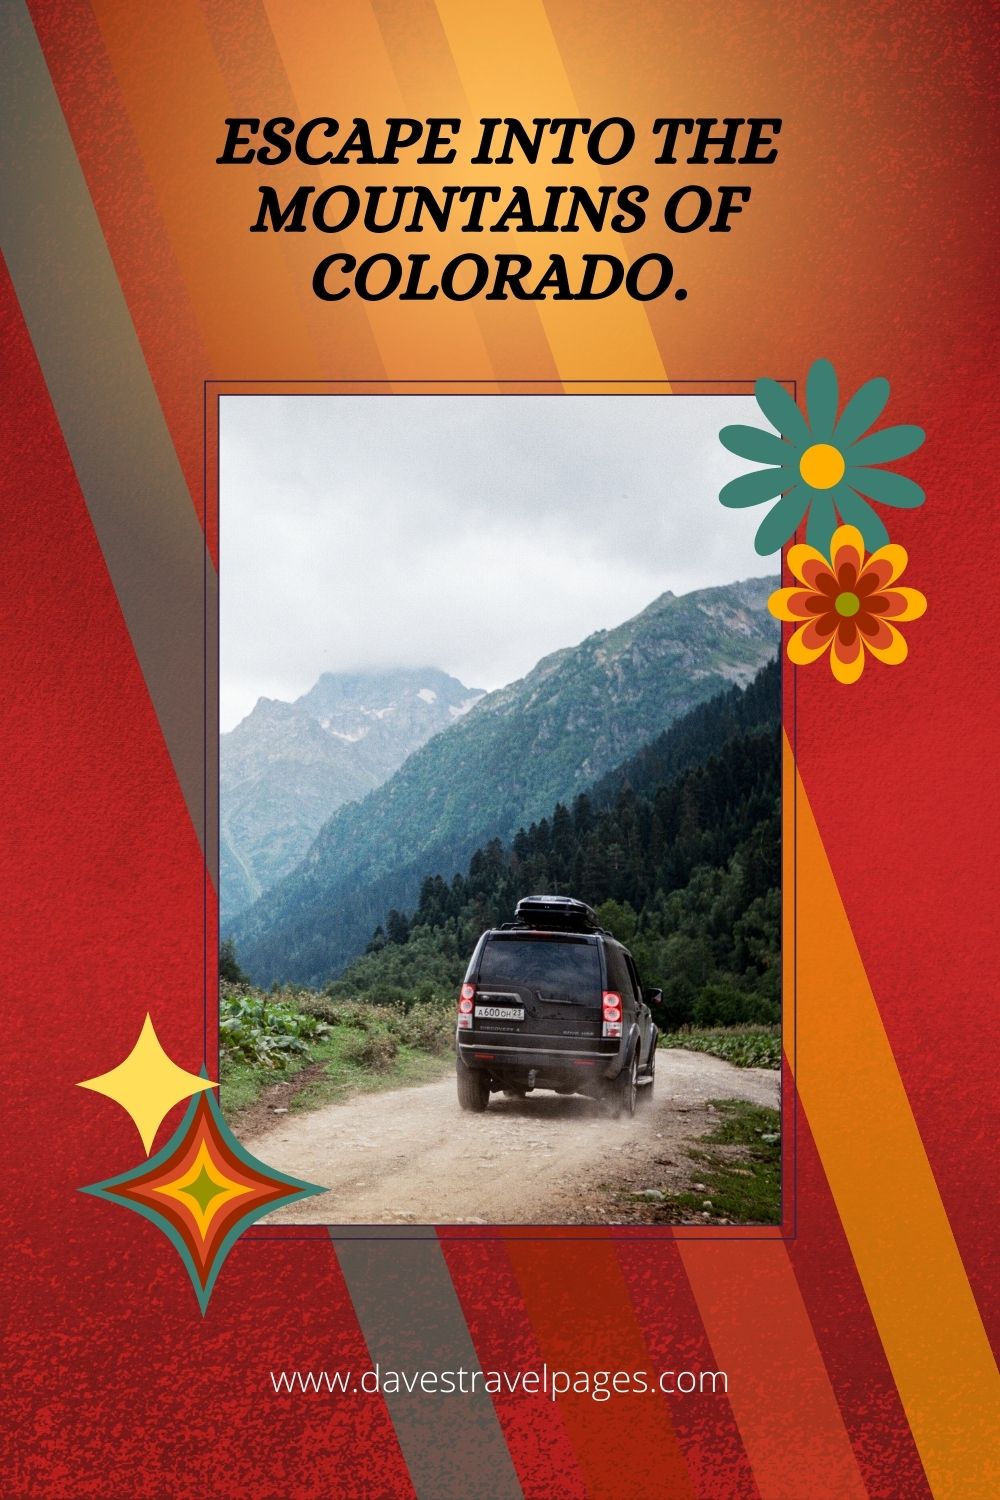 Escape into the mountains of Colorado.